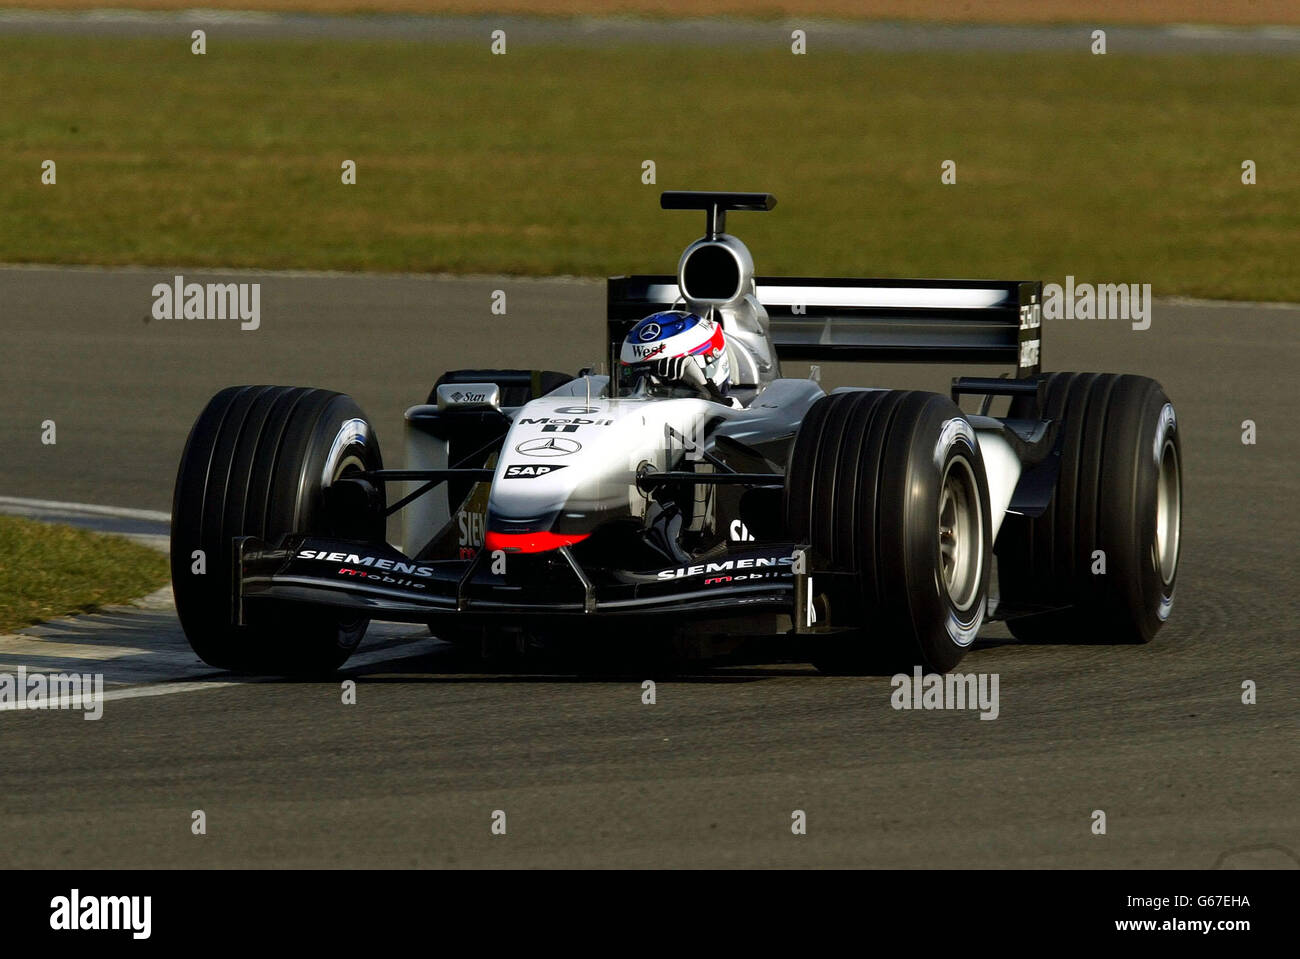 Kimi Raikkonen in his McLaren during pre season testing at Silverstone. Stock Photo